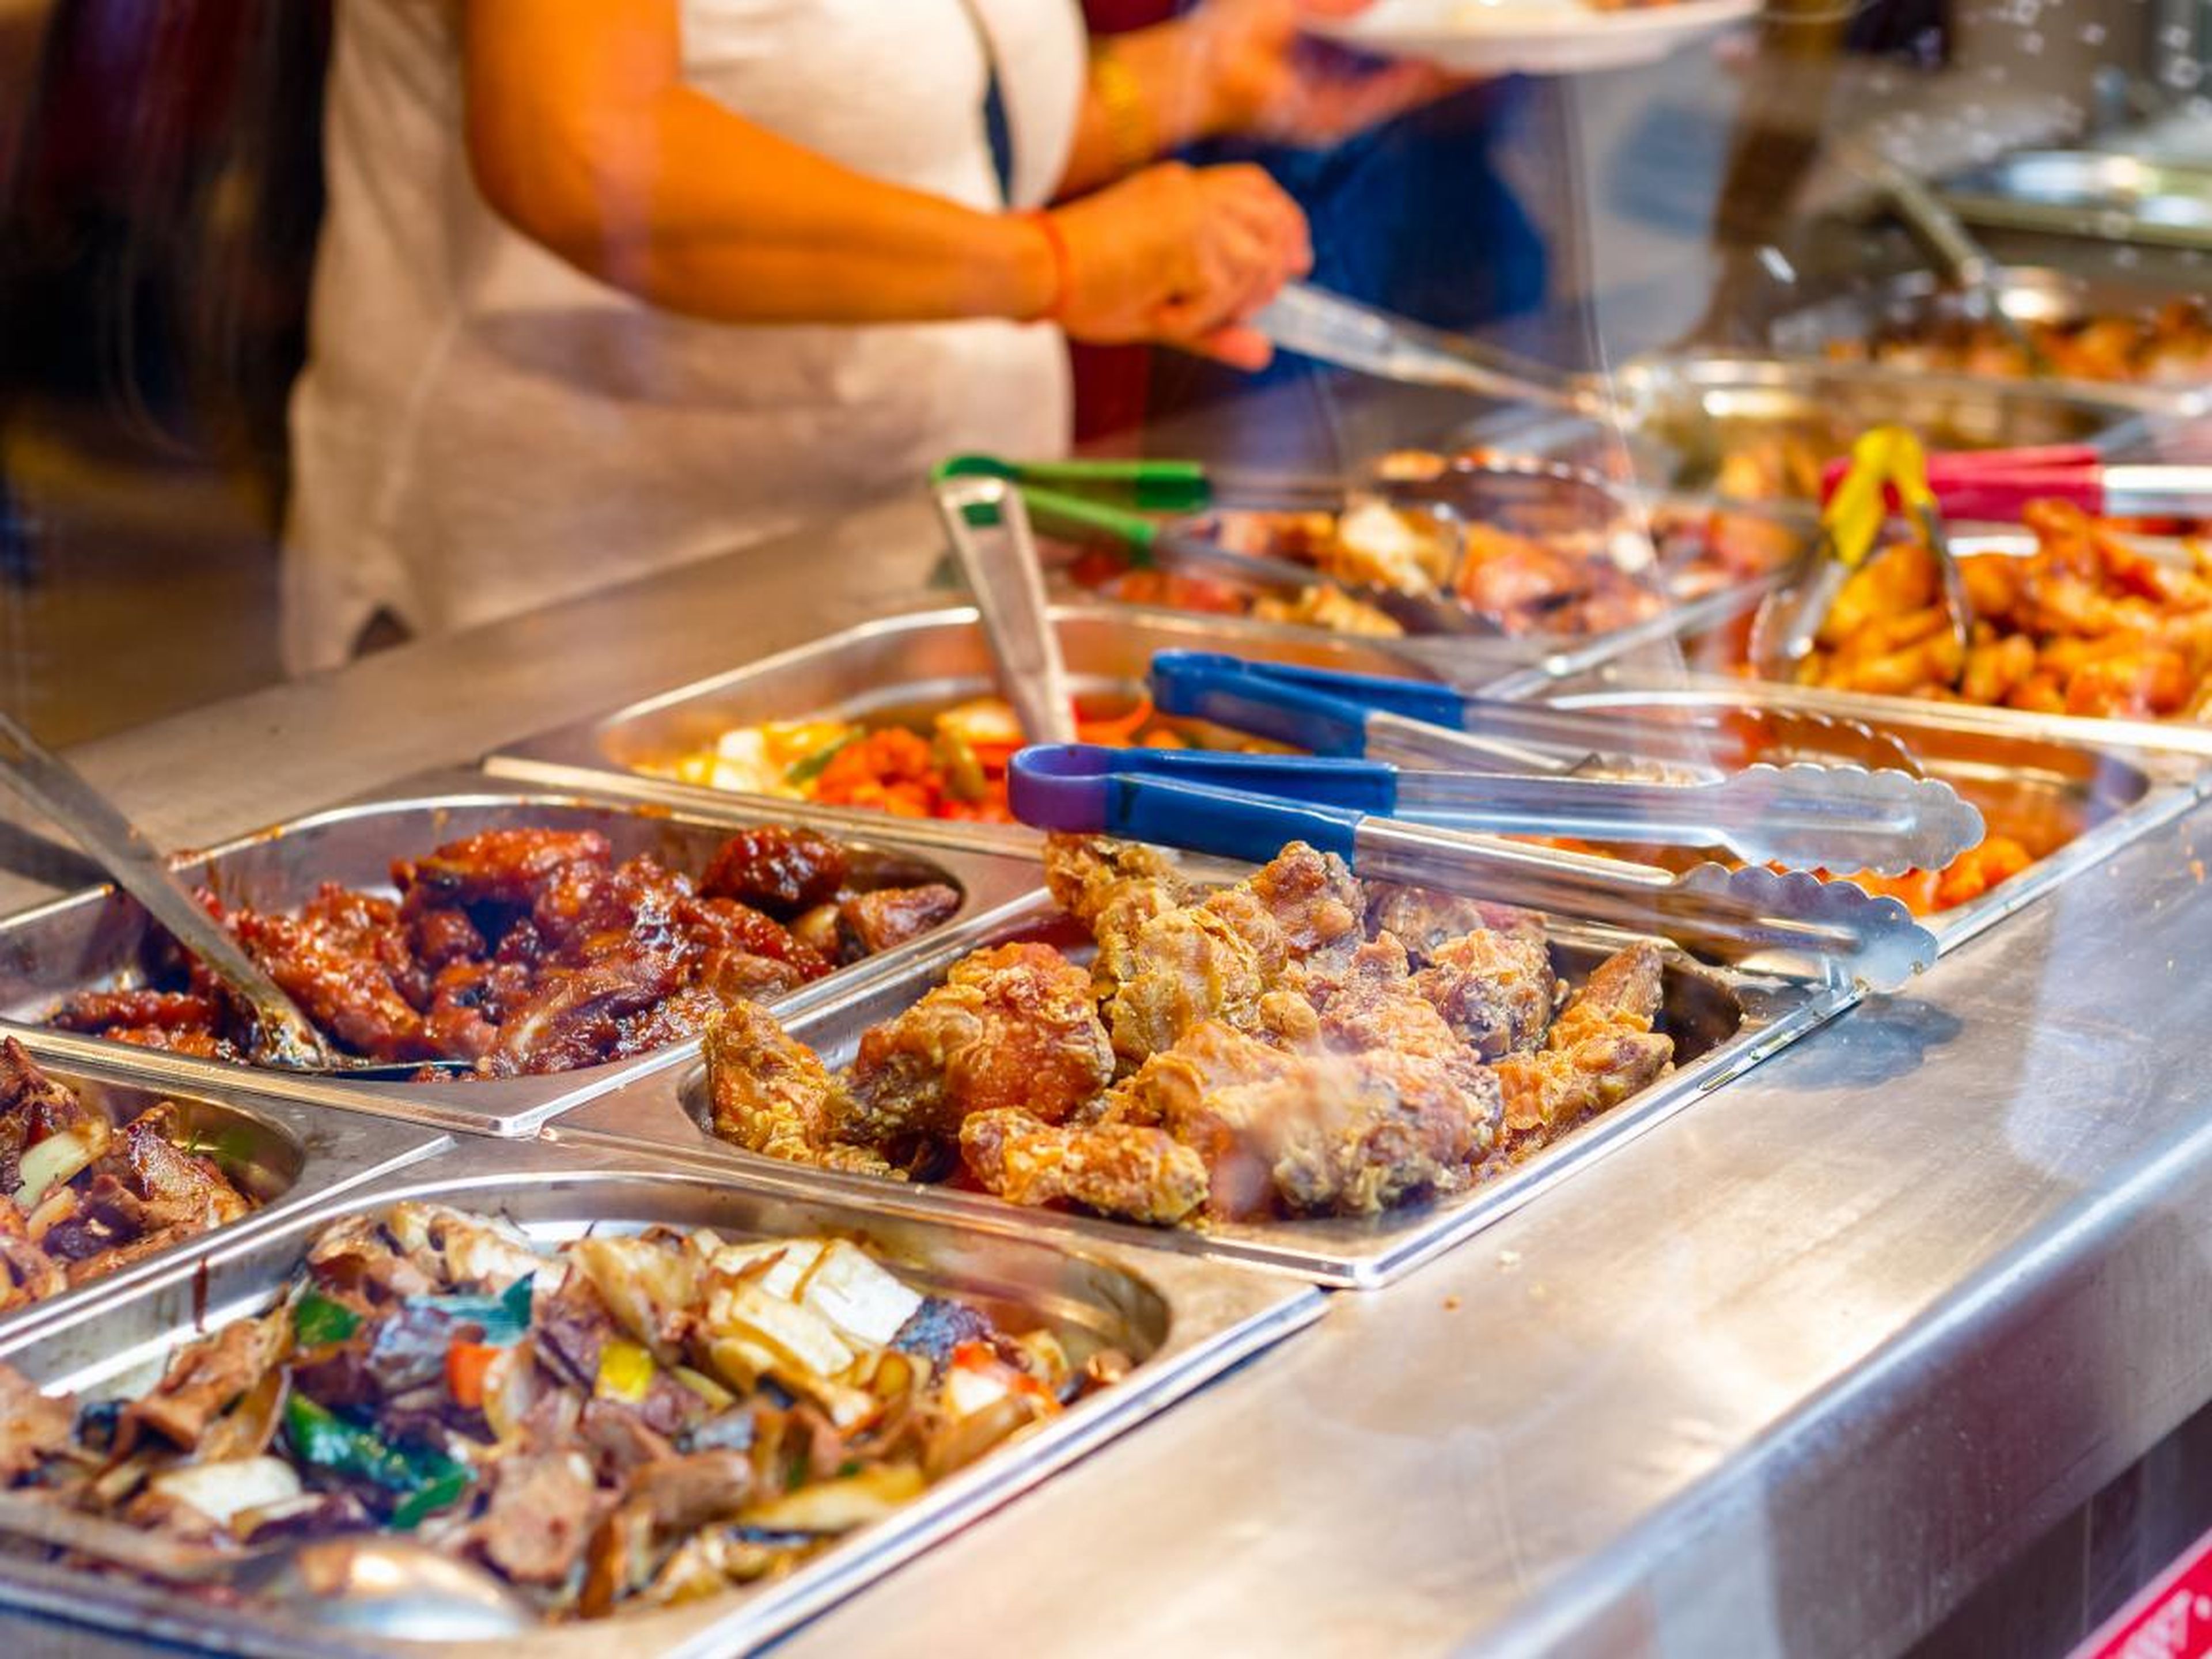 Los 5 peores platos que puedes comer en un buffet, según los expertos |  Business Insider España